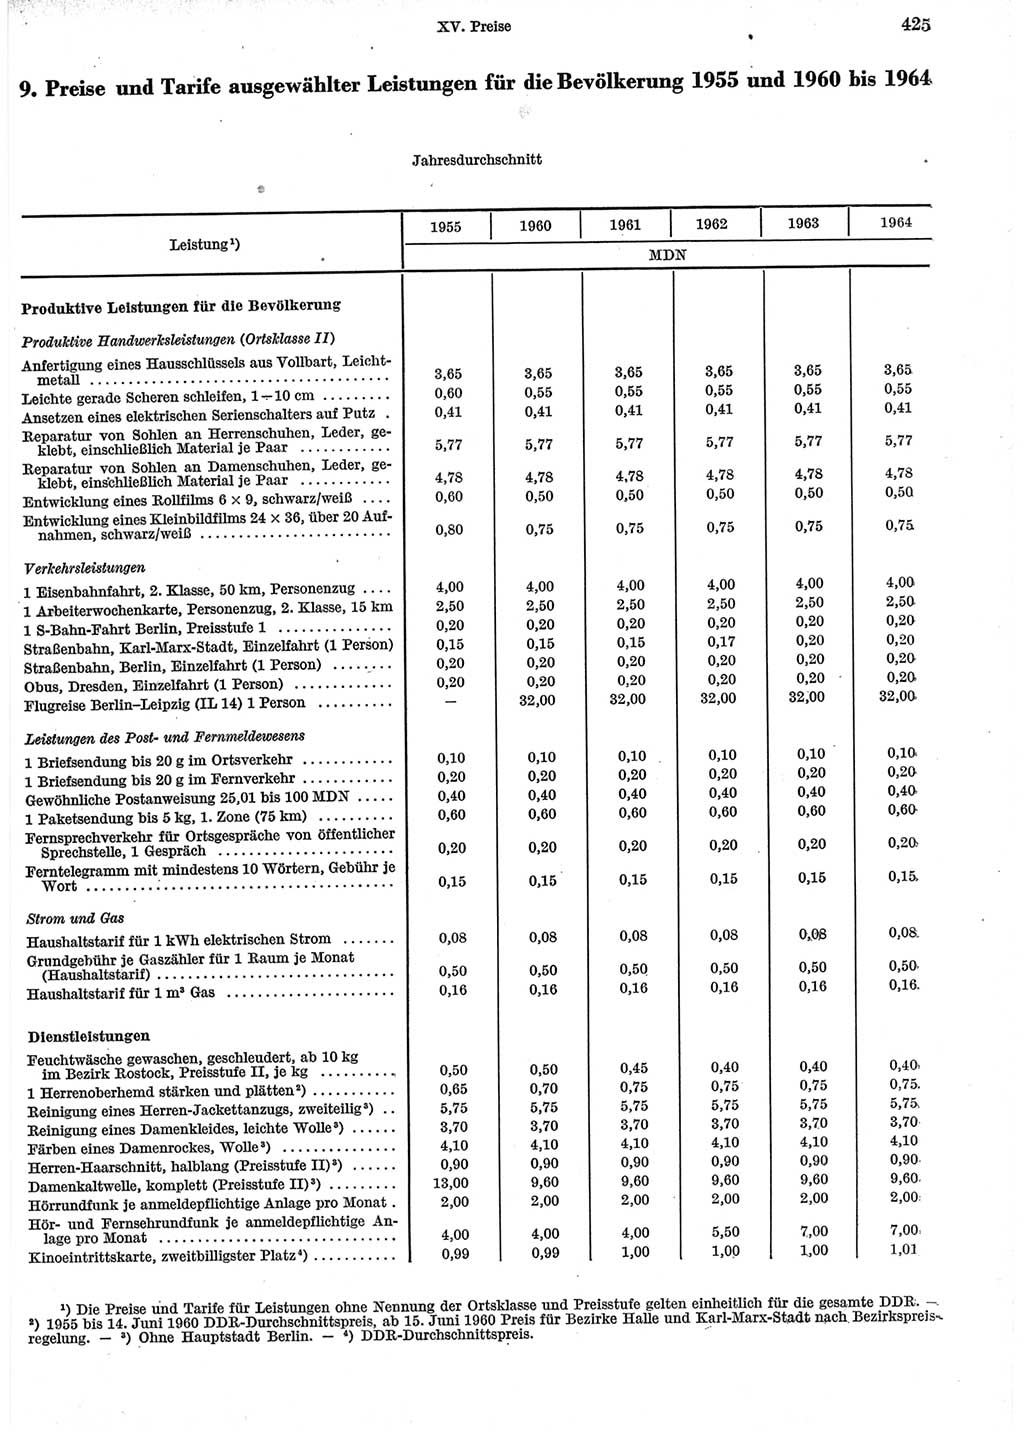 Statistisches Jahrbuch der Deutschen Demokratischen Republik (DDR) 1965, Seite 425 (Stat. Jb. DDR 1965, S. 425)